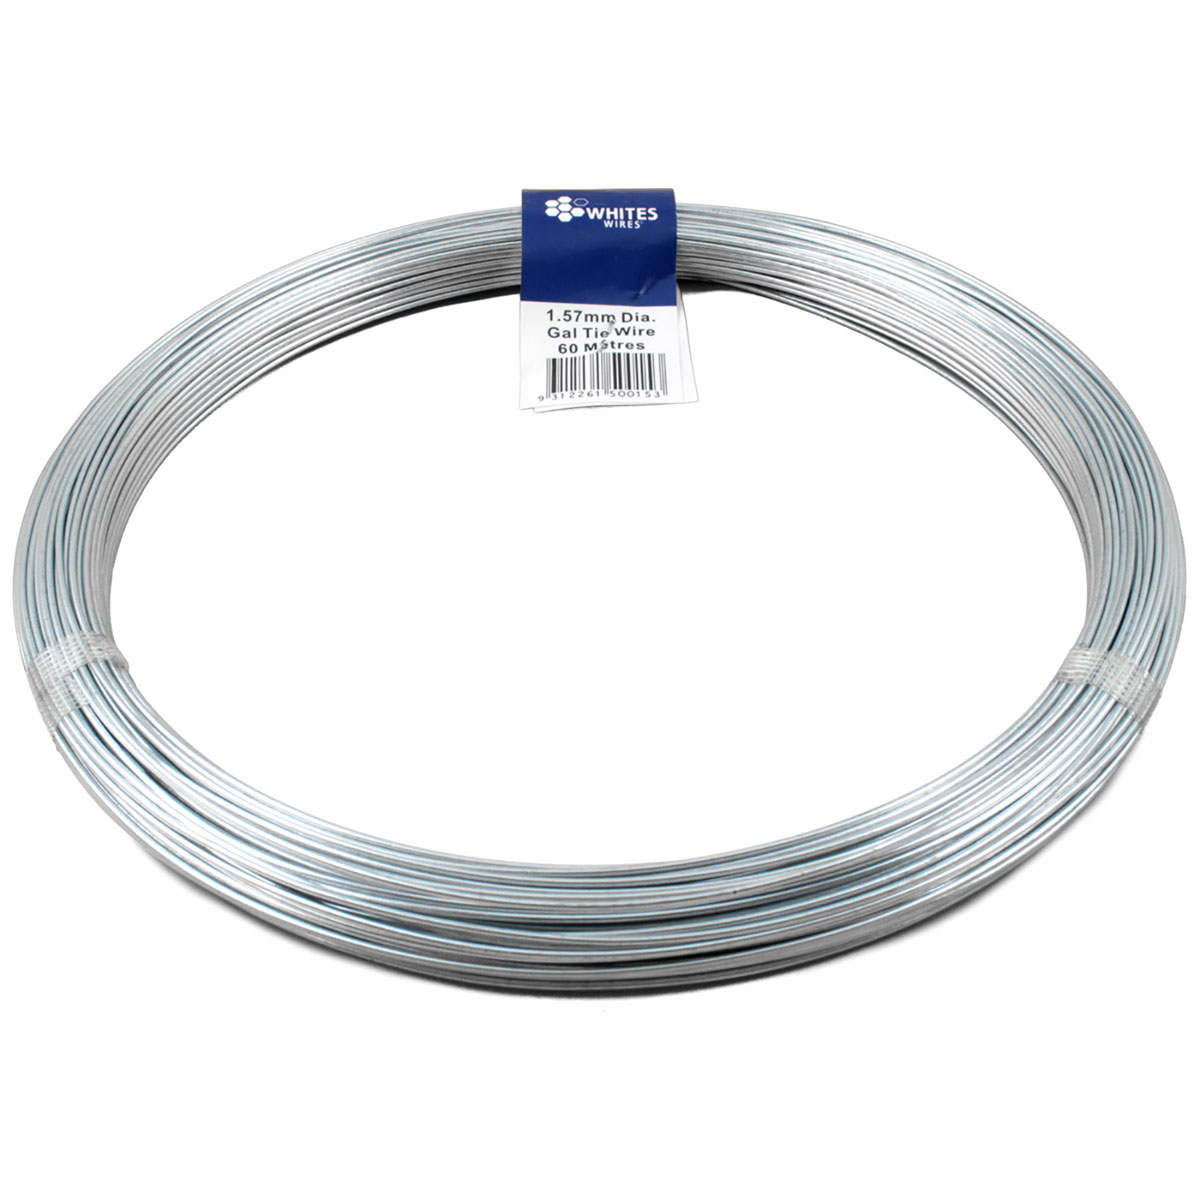 50015 tie wire gal 60m x 1.57mm